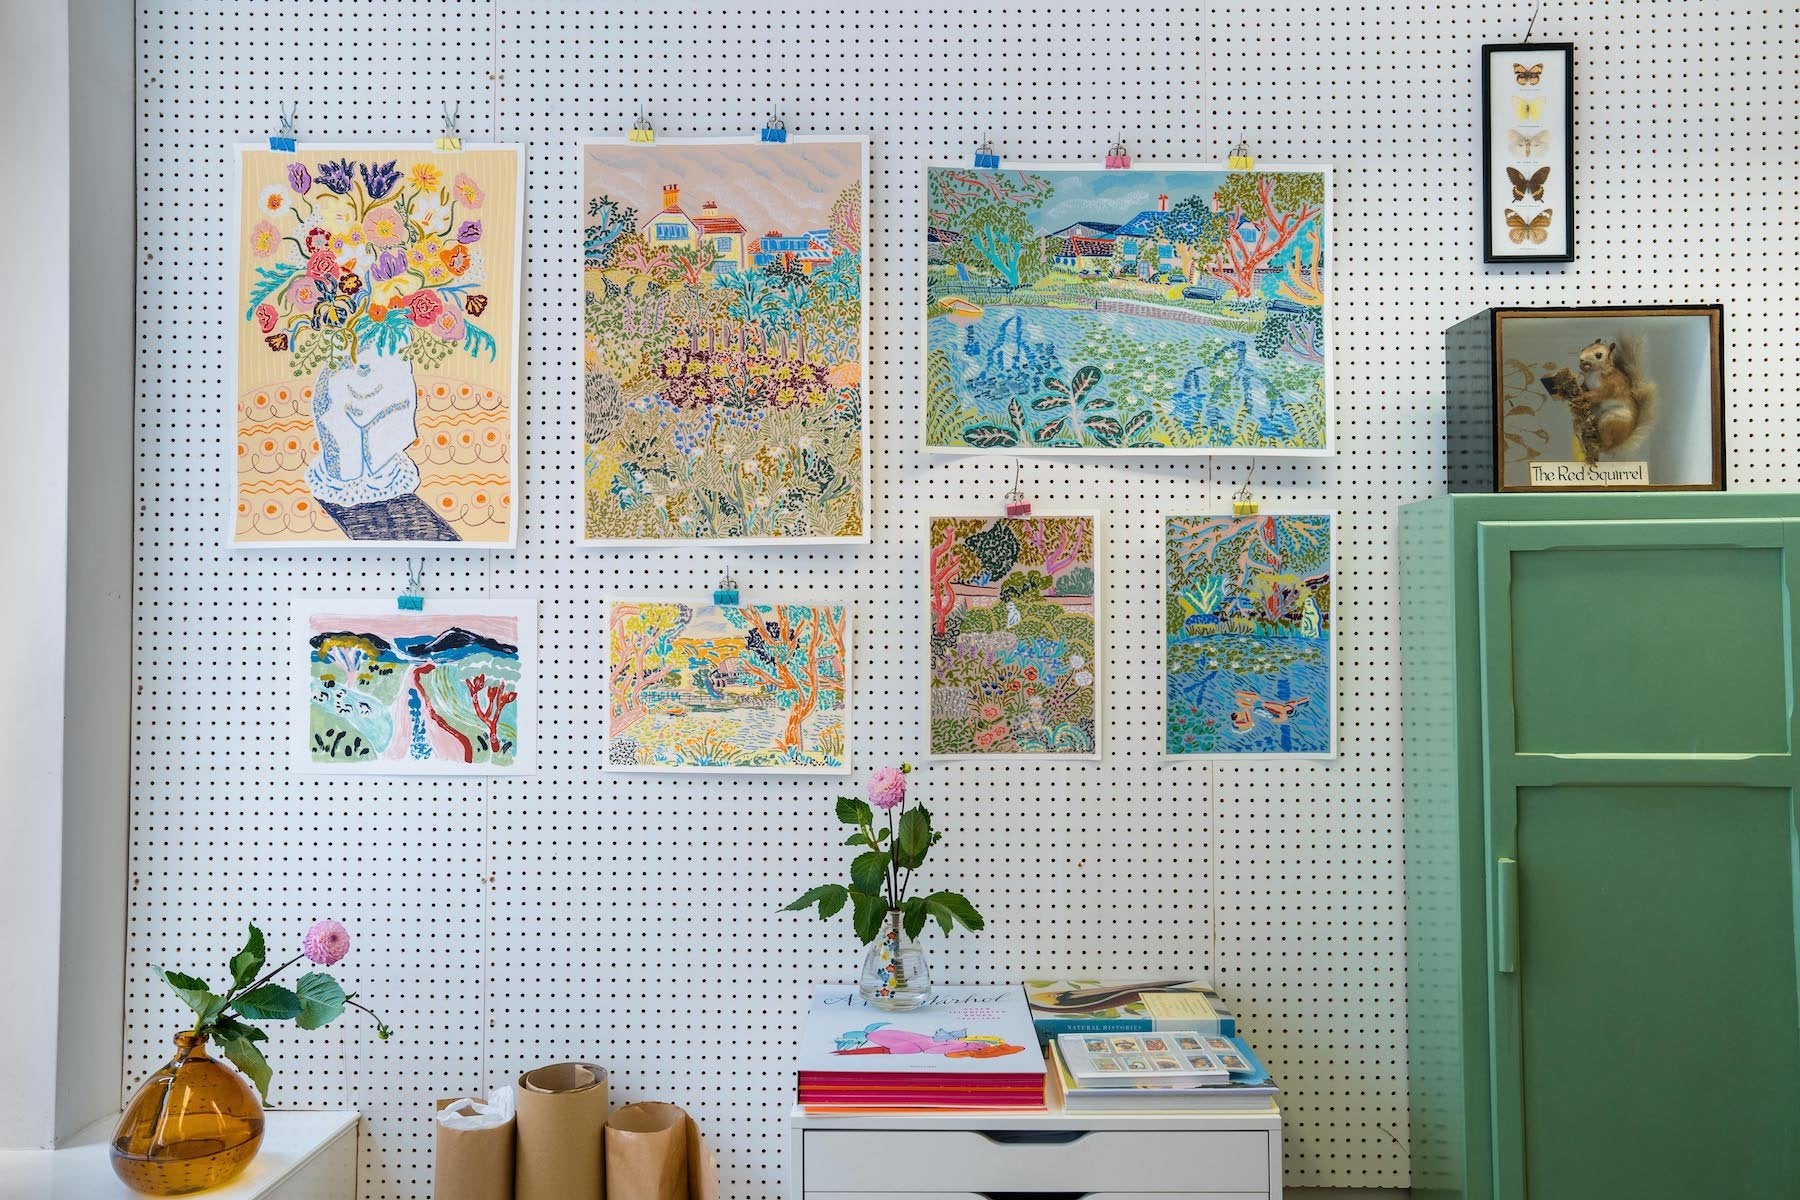 Art studio wall hang by rising artist Camilla Perkins.